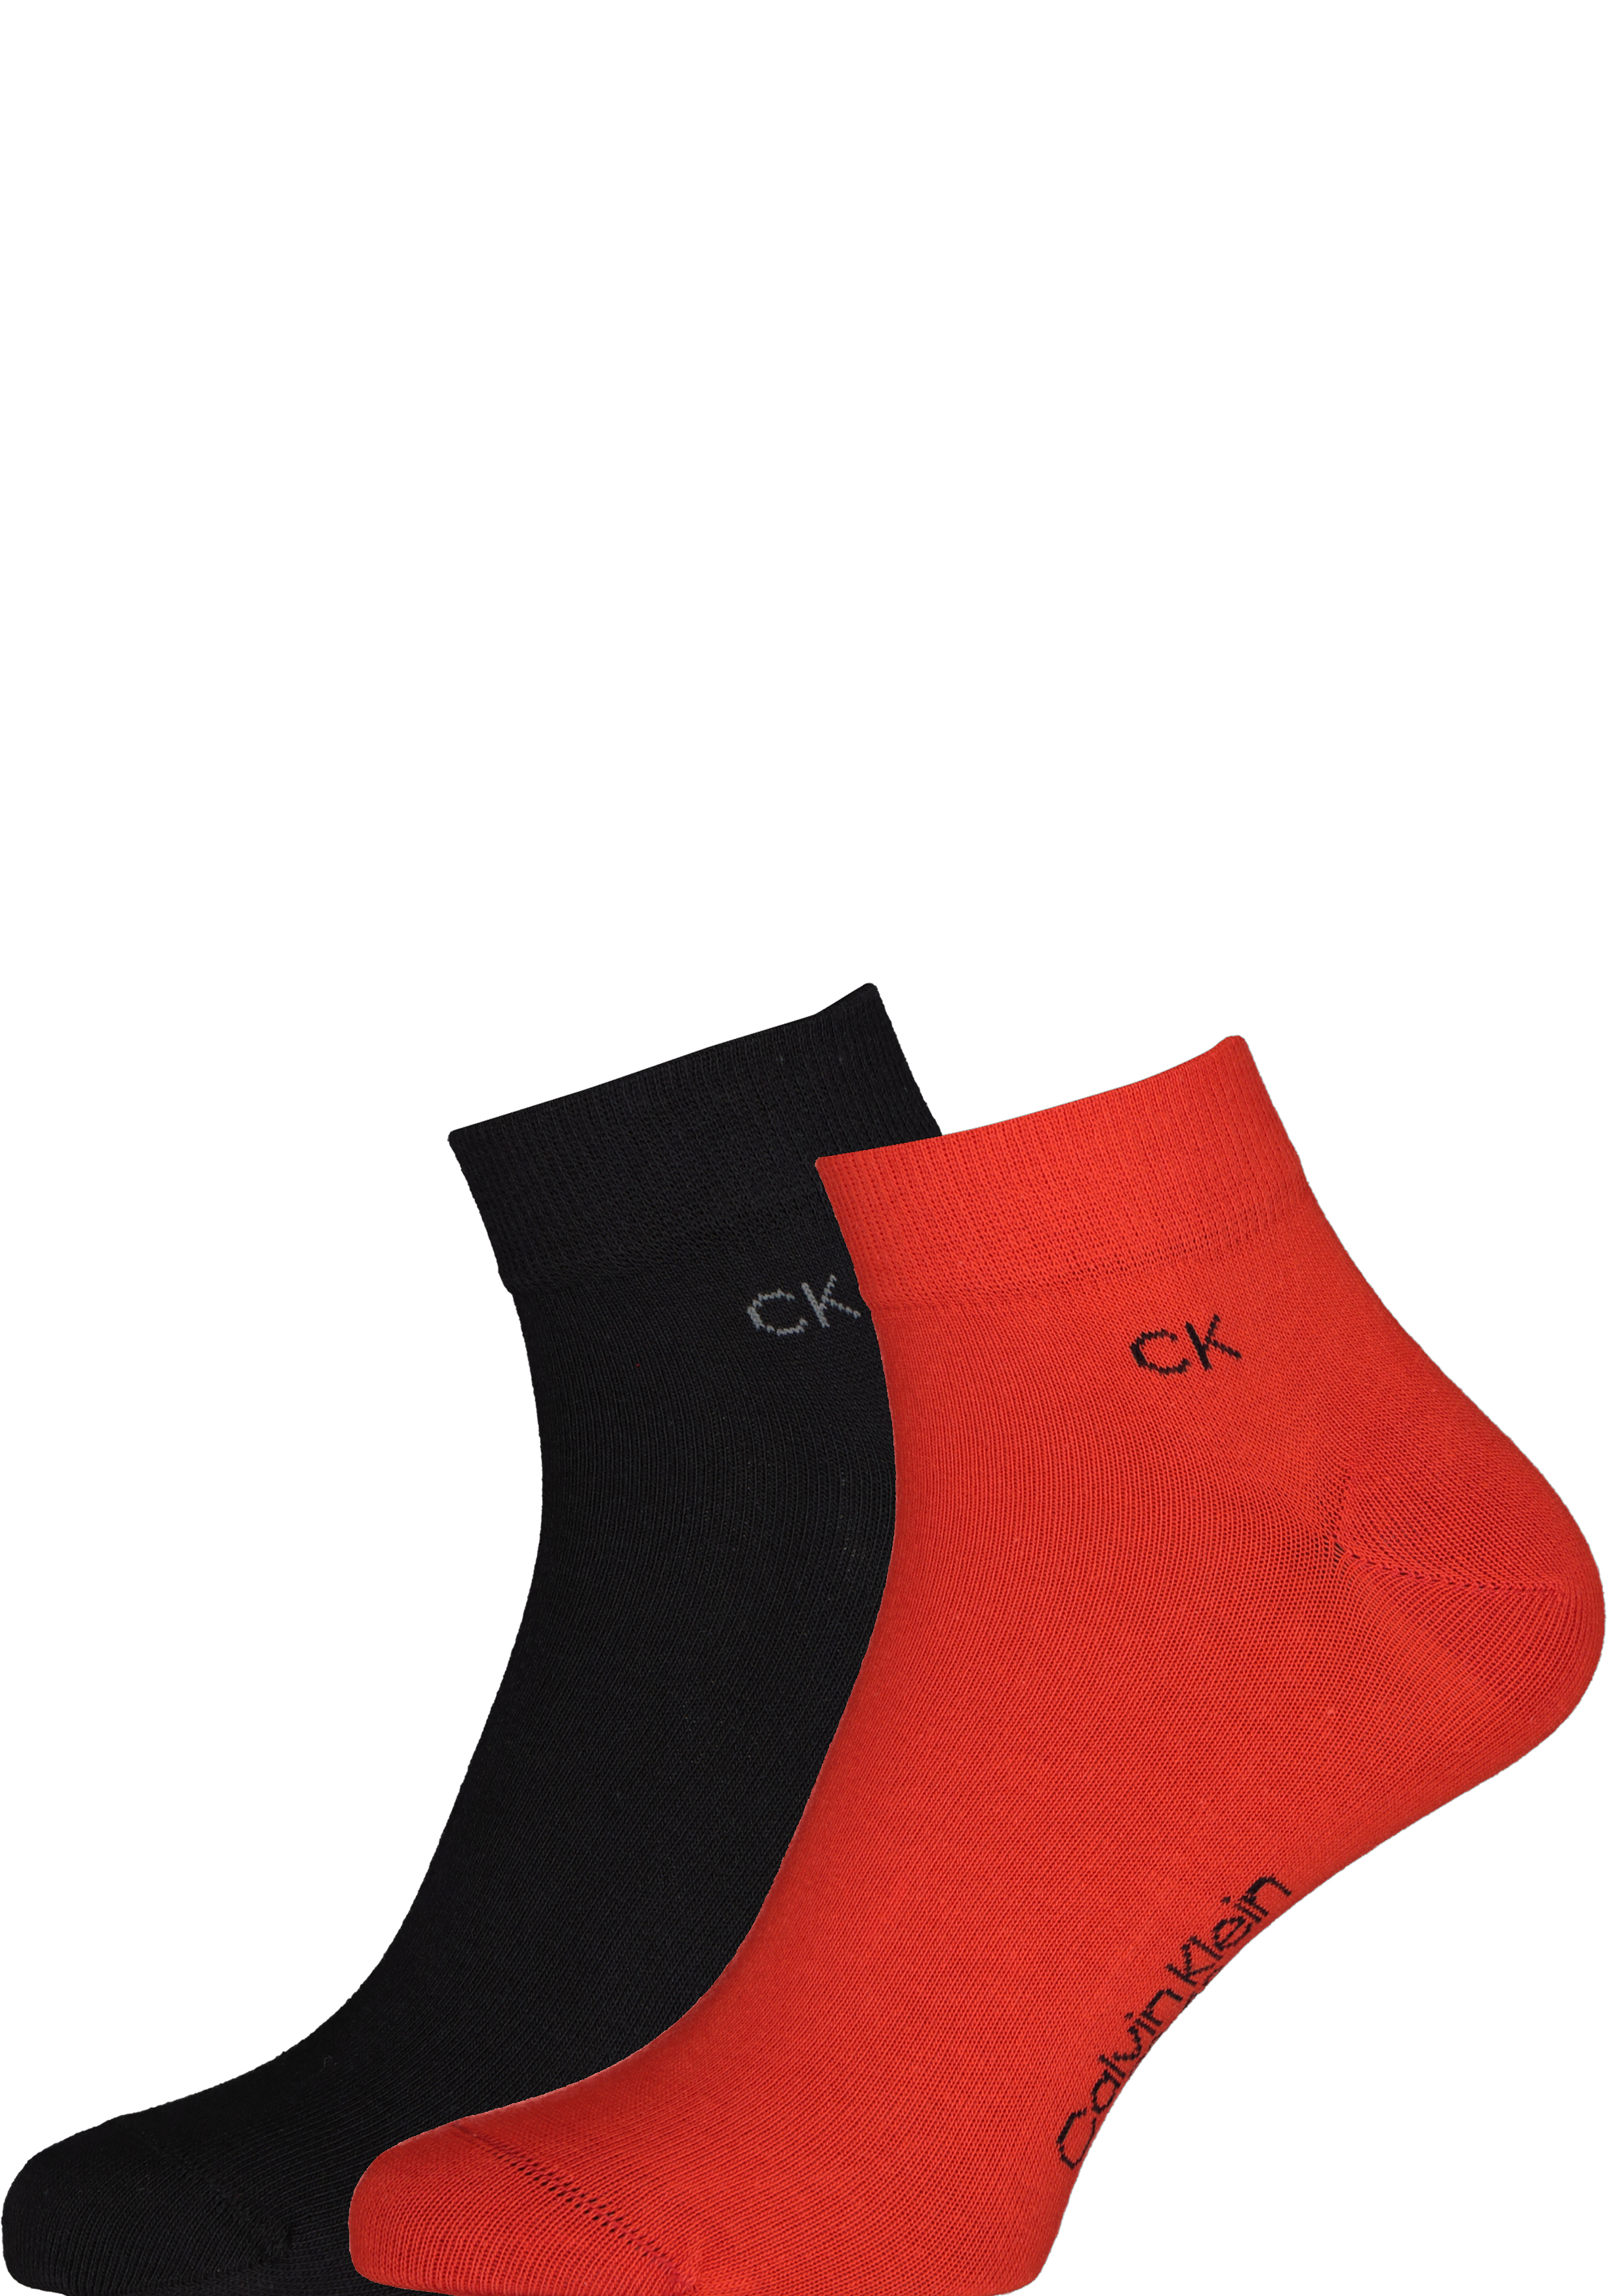 Calvin Klein herensokken Simon (2-pack), hoge enkelsokken, rood met zwart